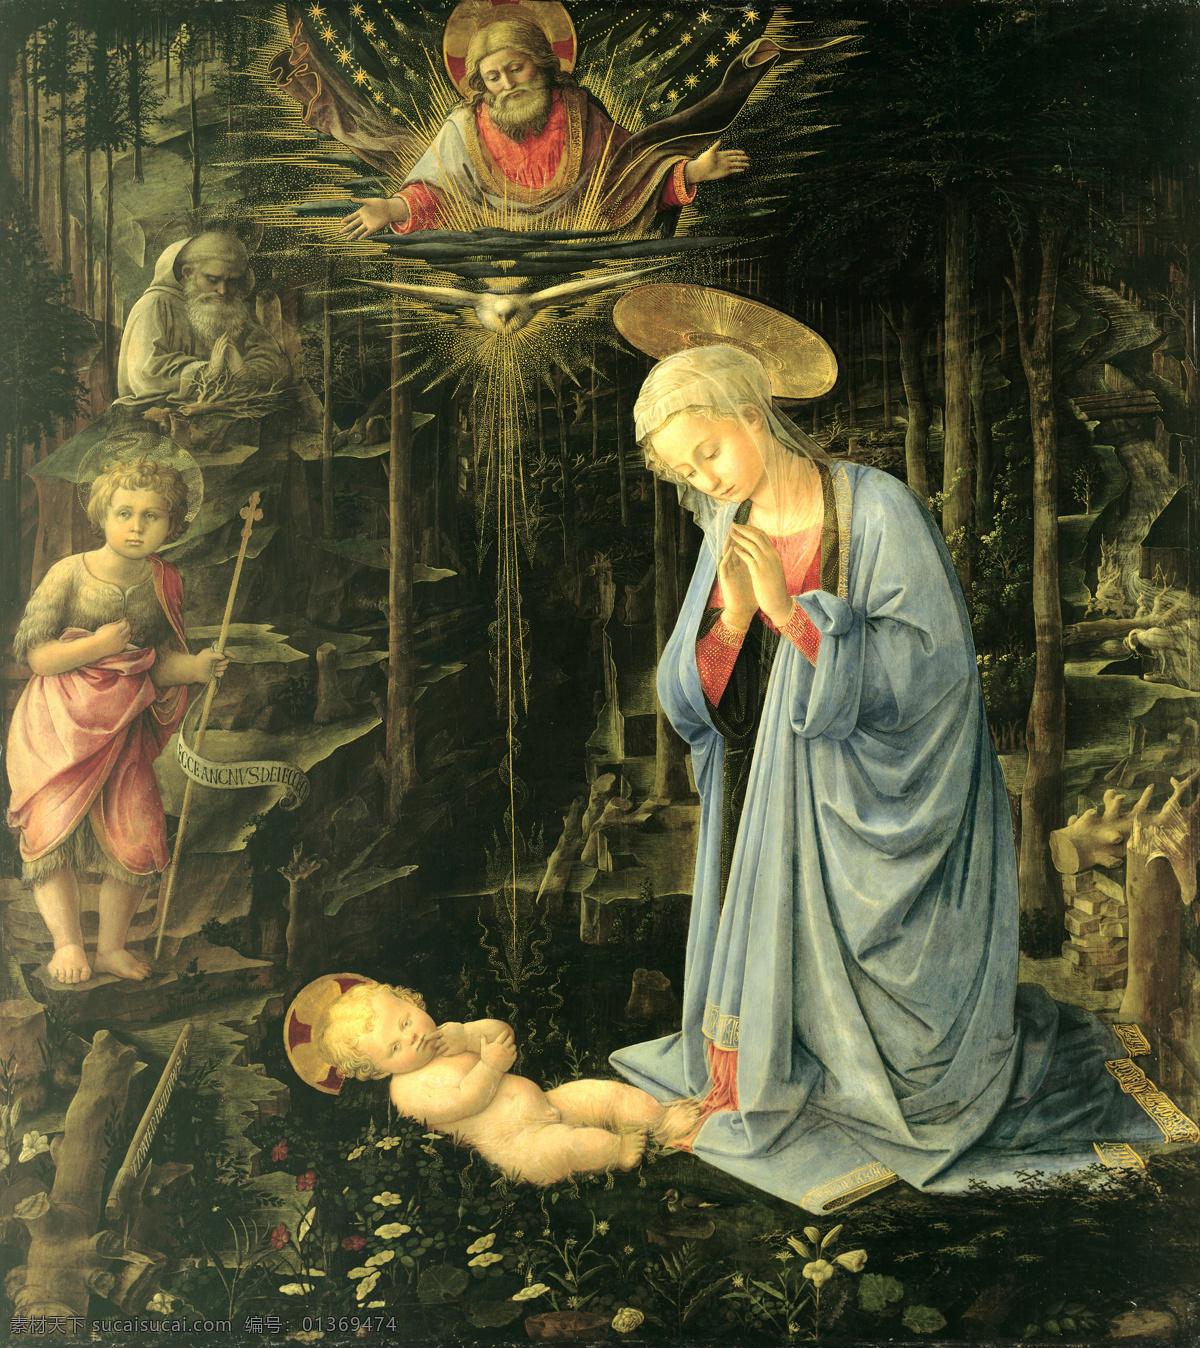 圣母 圣婴 古典油画 绘画书法 基督教 文化艺术 耶稣 宗教 圣母与圣婴 圣母玛丽娅 母子情 母与子 家居装饰素材